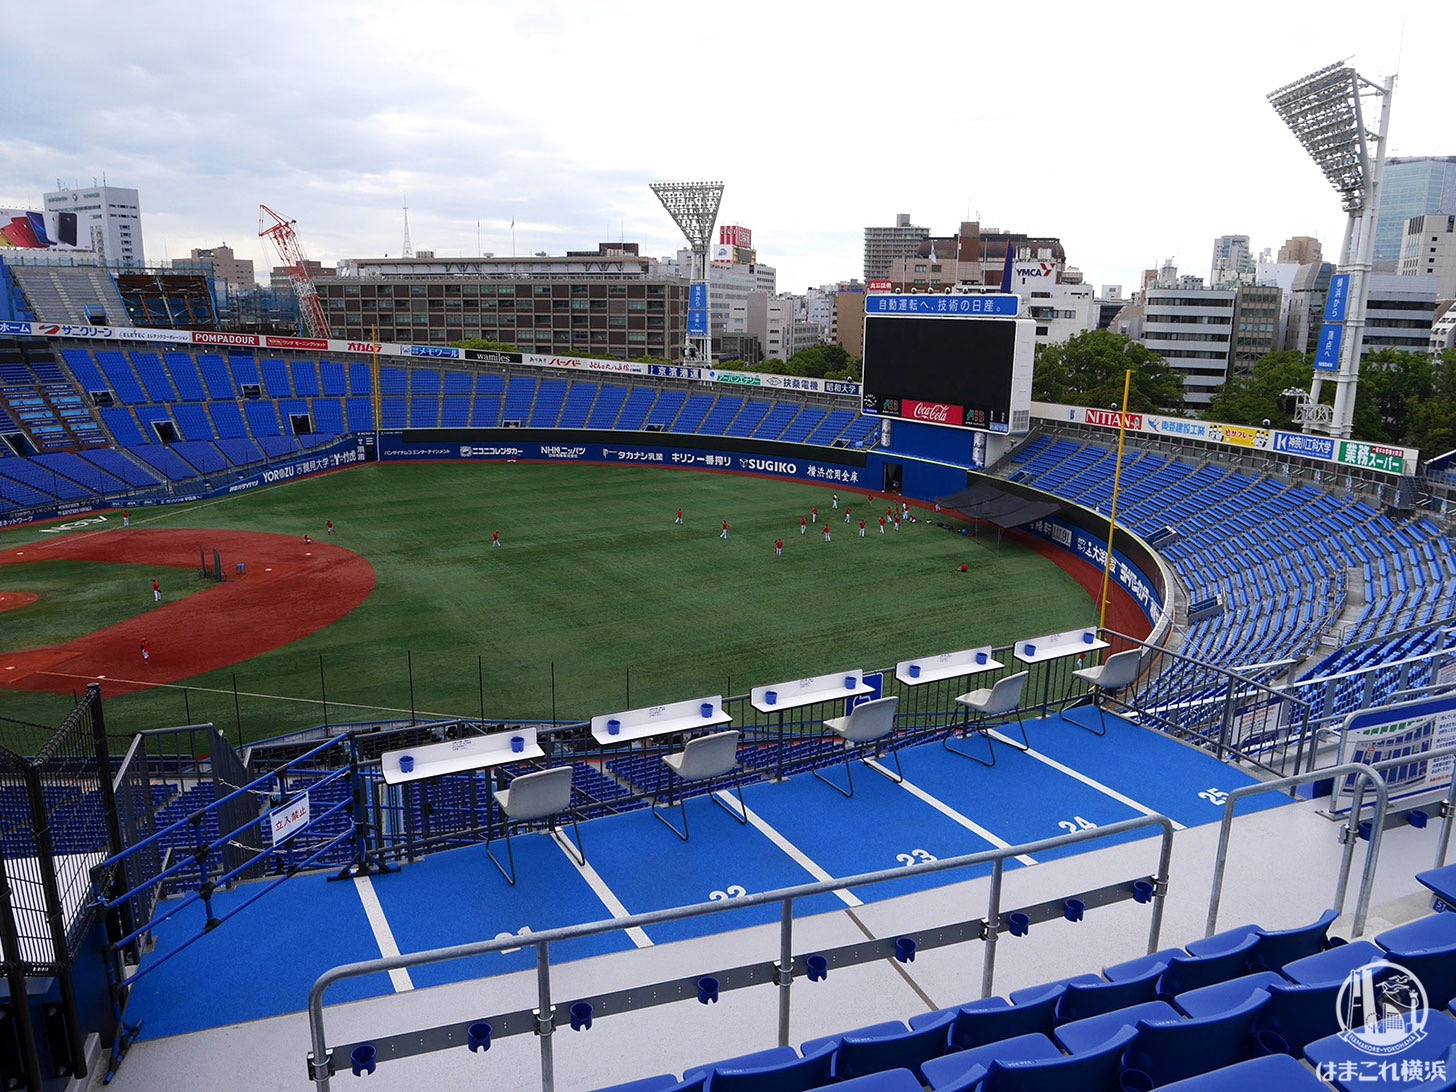 スタジアム 座席 横浜 横浜スタジアム スタンド席の座席表と見え方